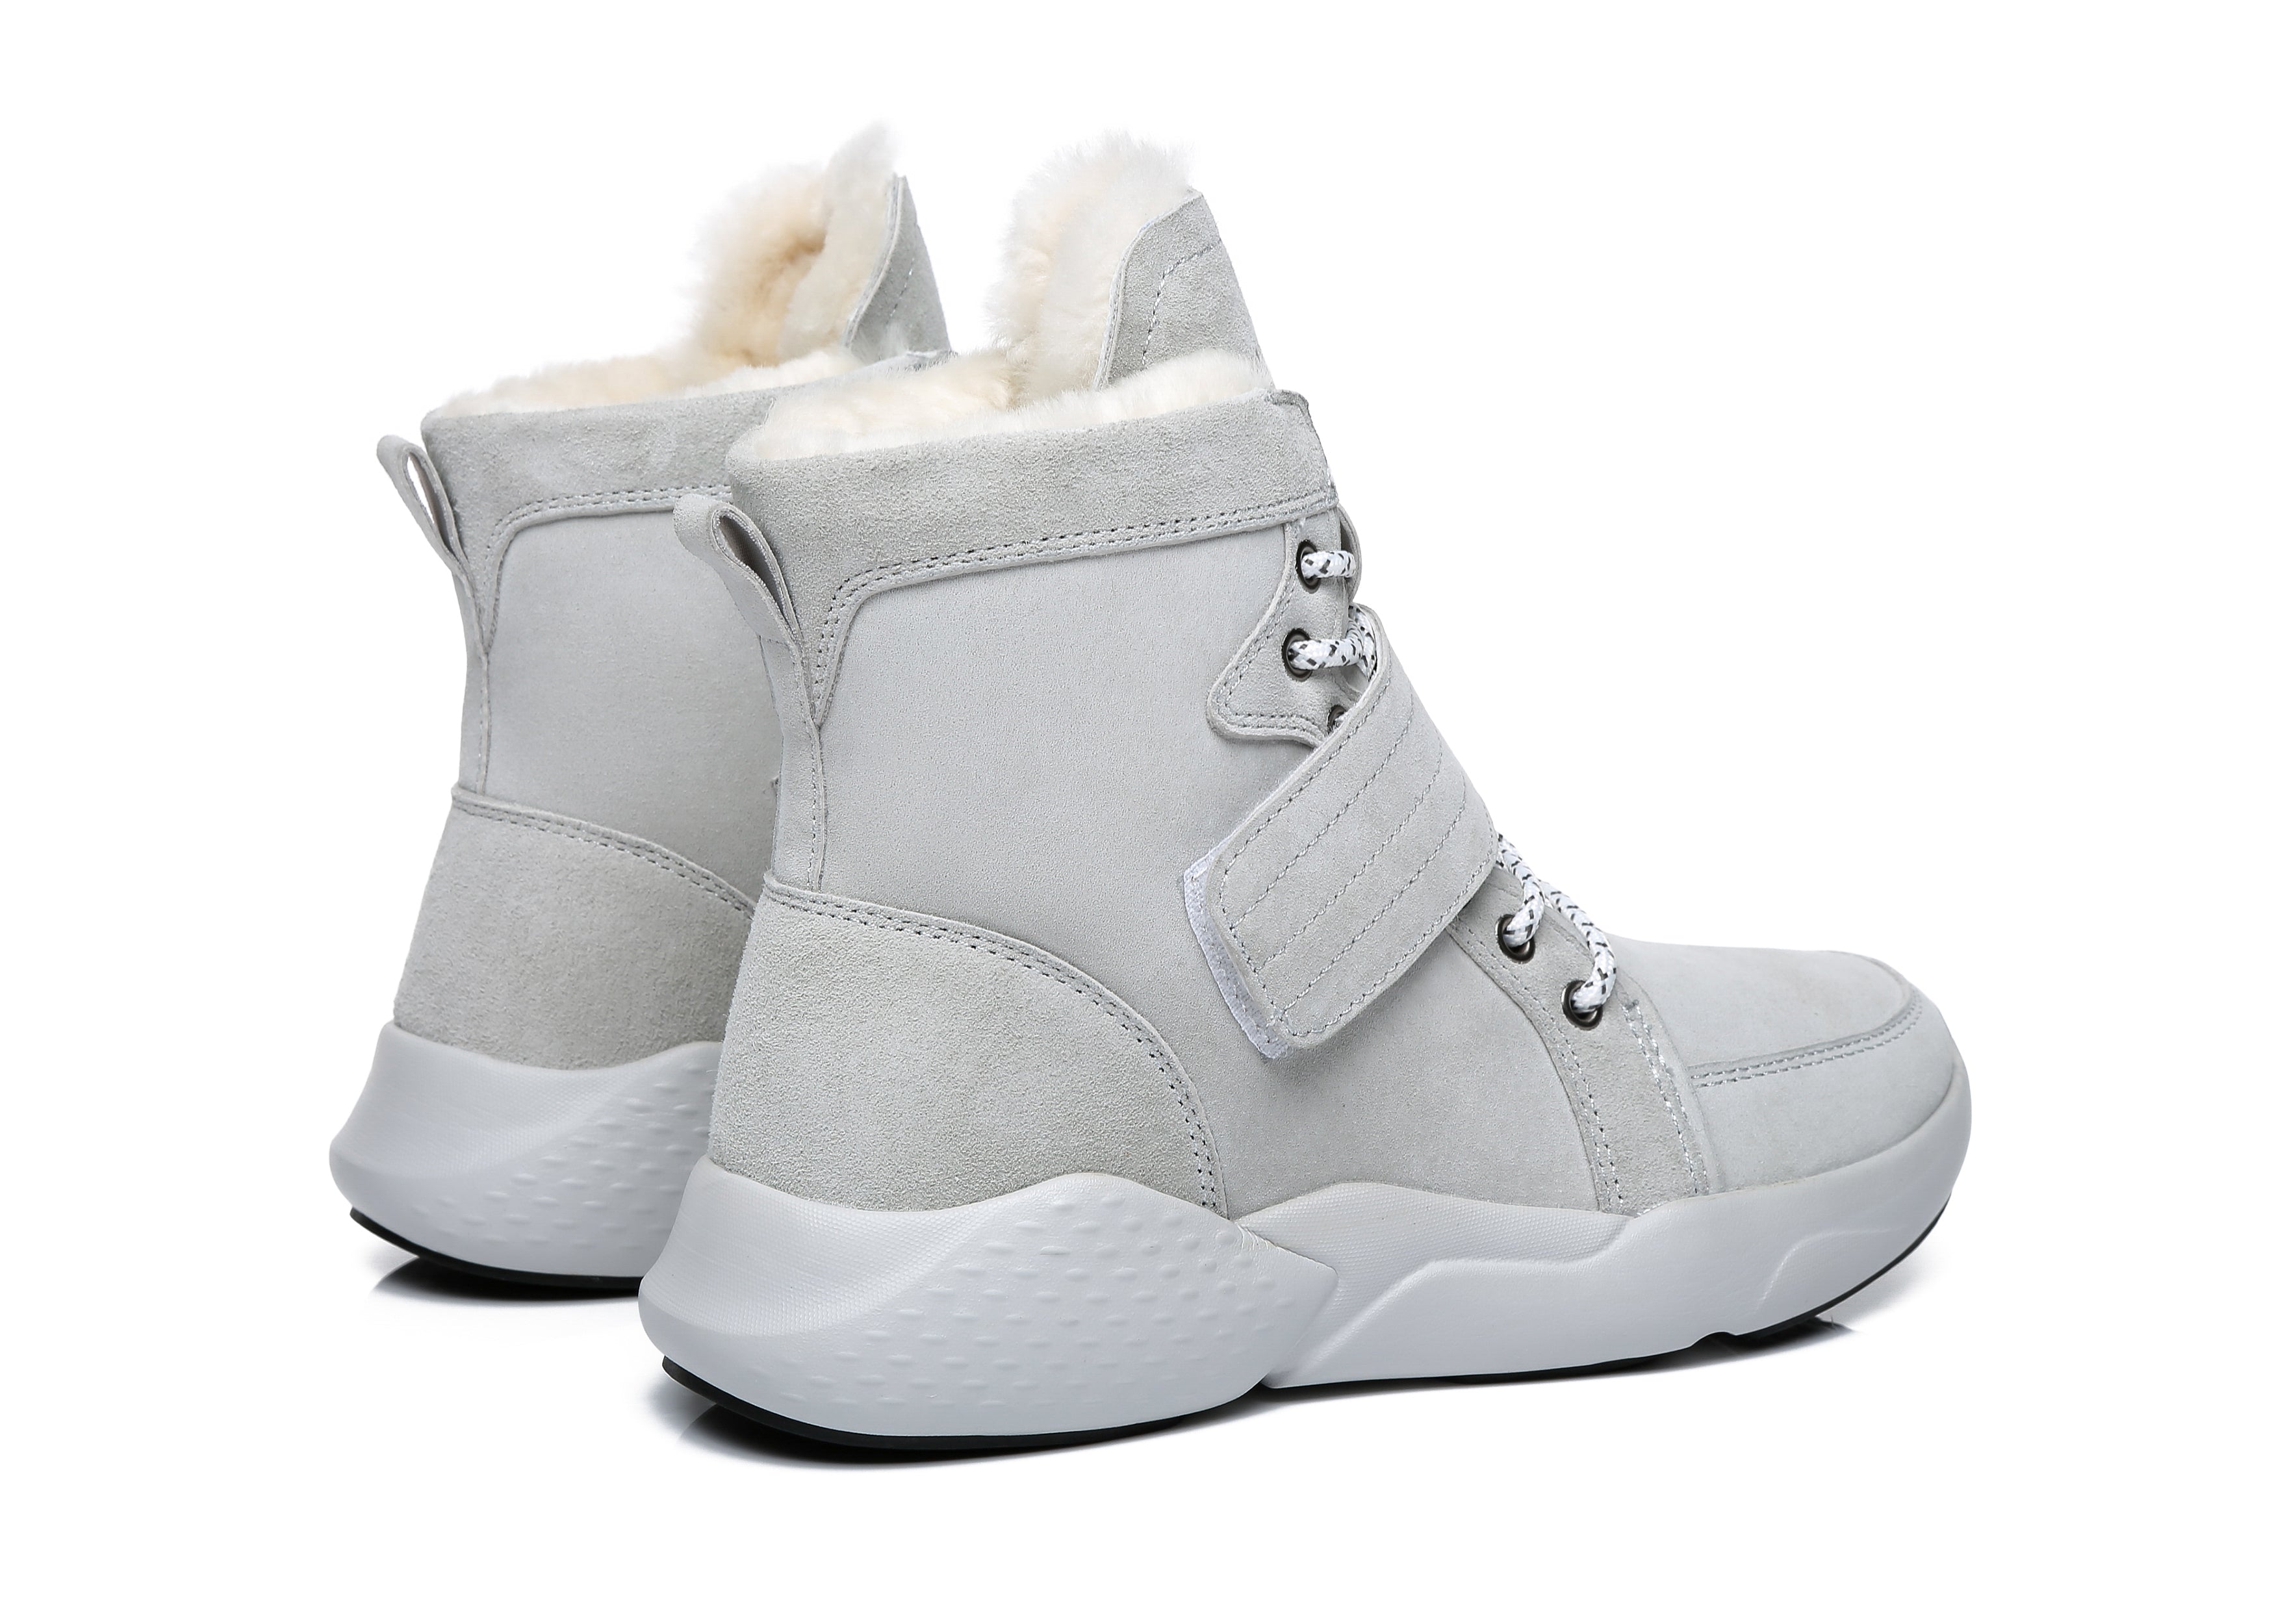 EVERAU® Ankle Chunky Sneakers Women City Walker - Sneaker - Grey - AU Ladies 4 / AU Men 2 / EU 35 - Uggoutlet